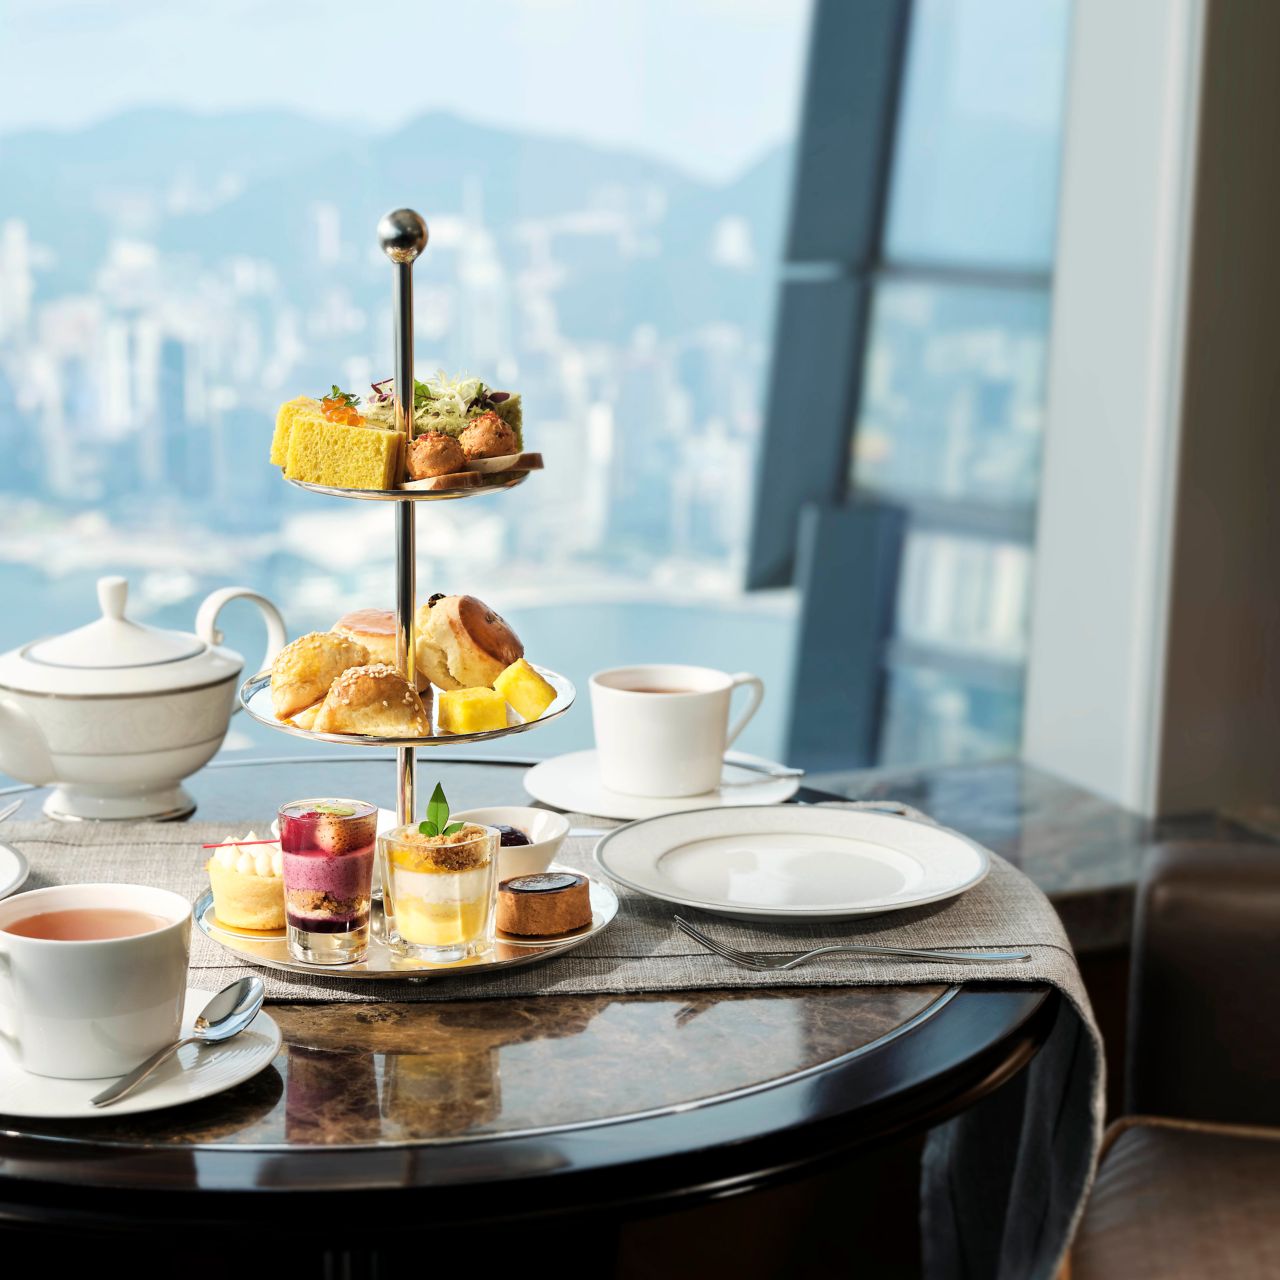 The Ritz-Carlton Spa, Hong Kong Afternoon Tea at Club Lounge